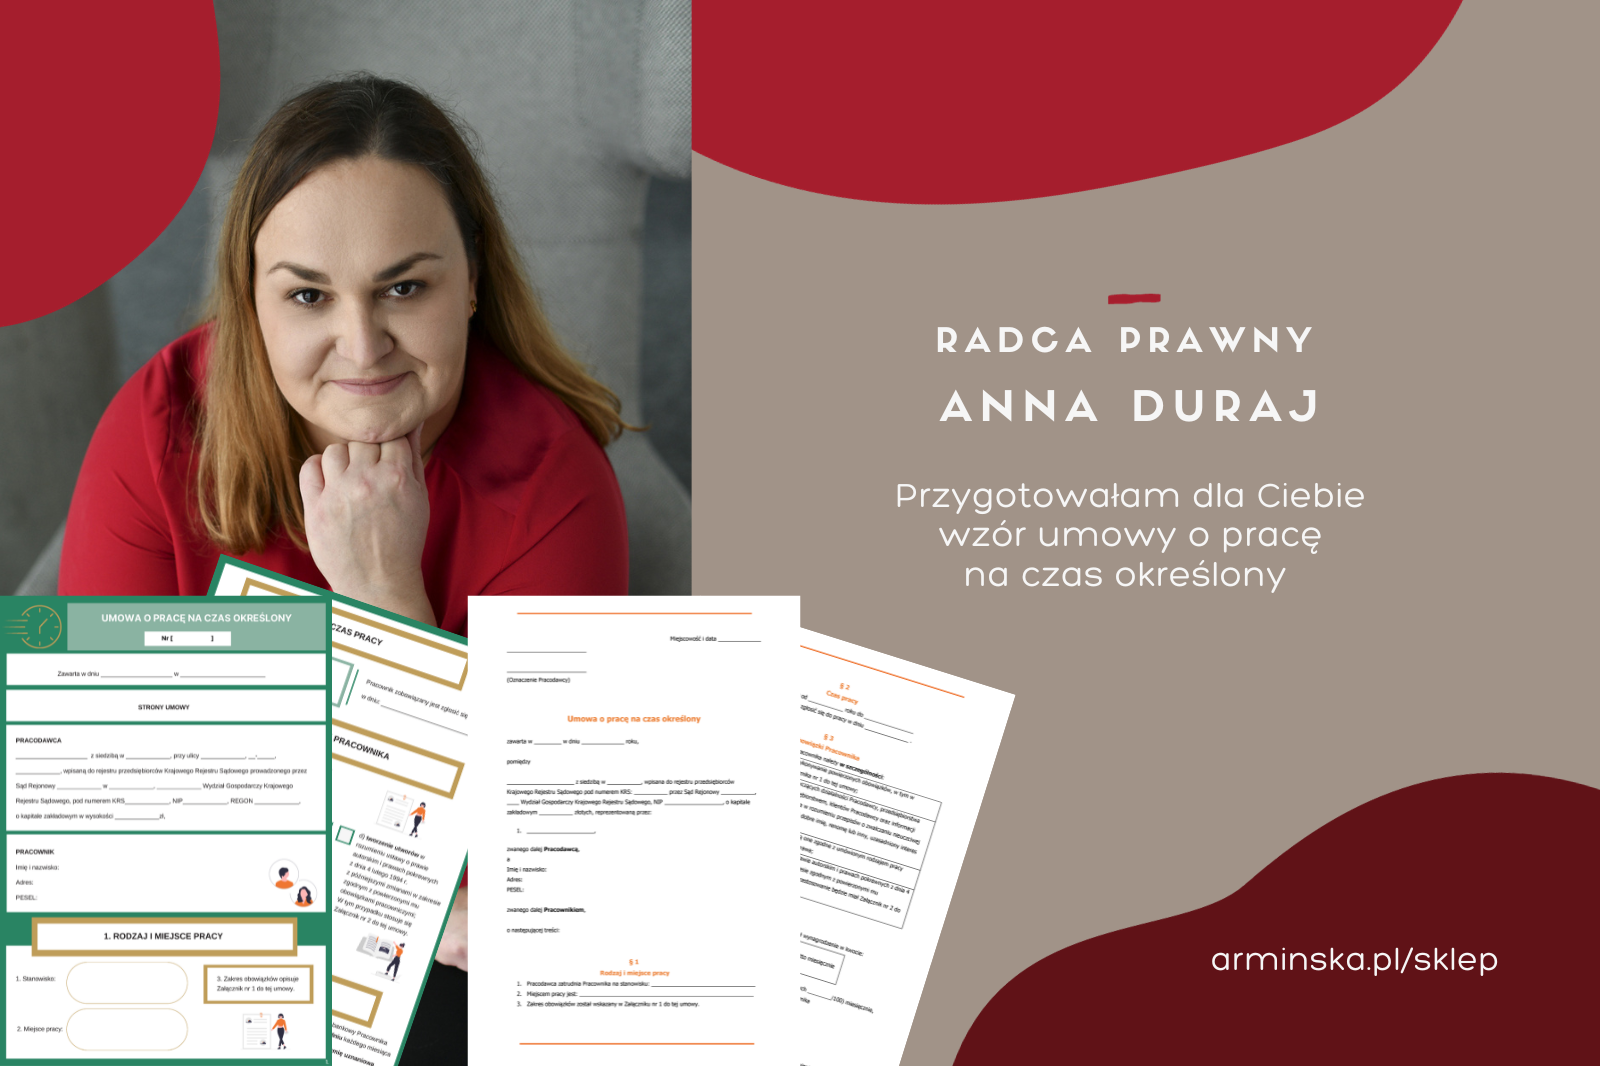 Radca prawny Anna Duraj z kancelarii armińska radcowie prawni prezentuje umowę o pracę na czas określony obrazek do produktu